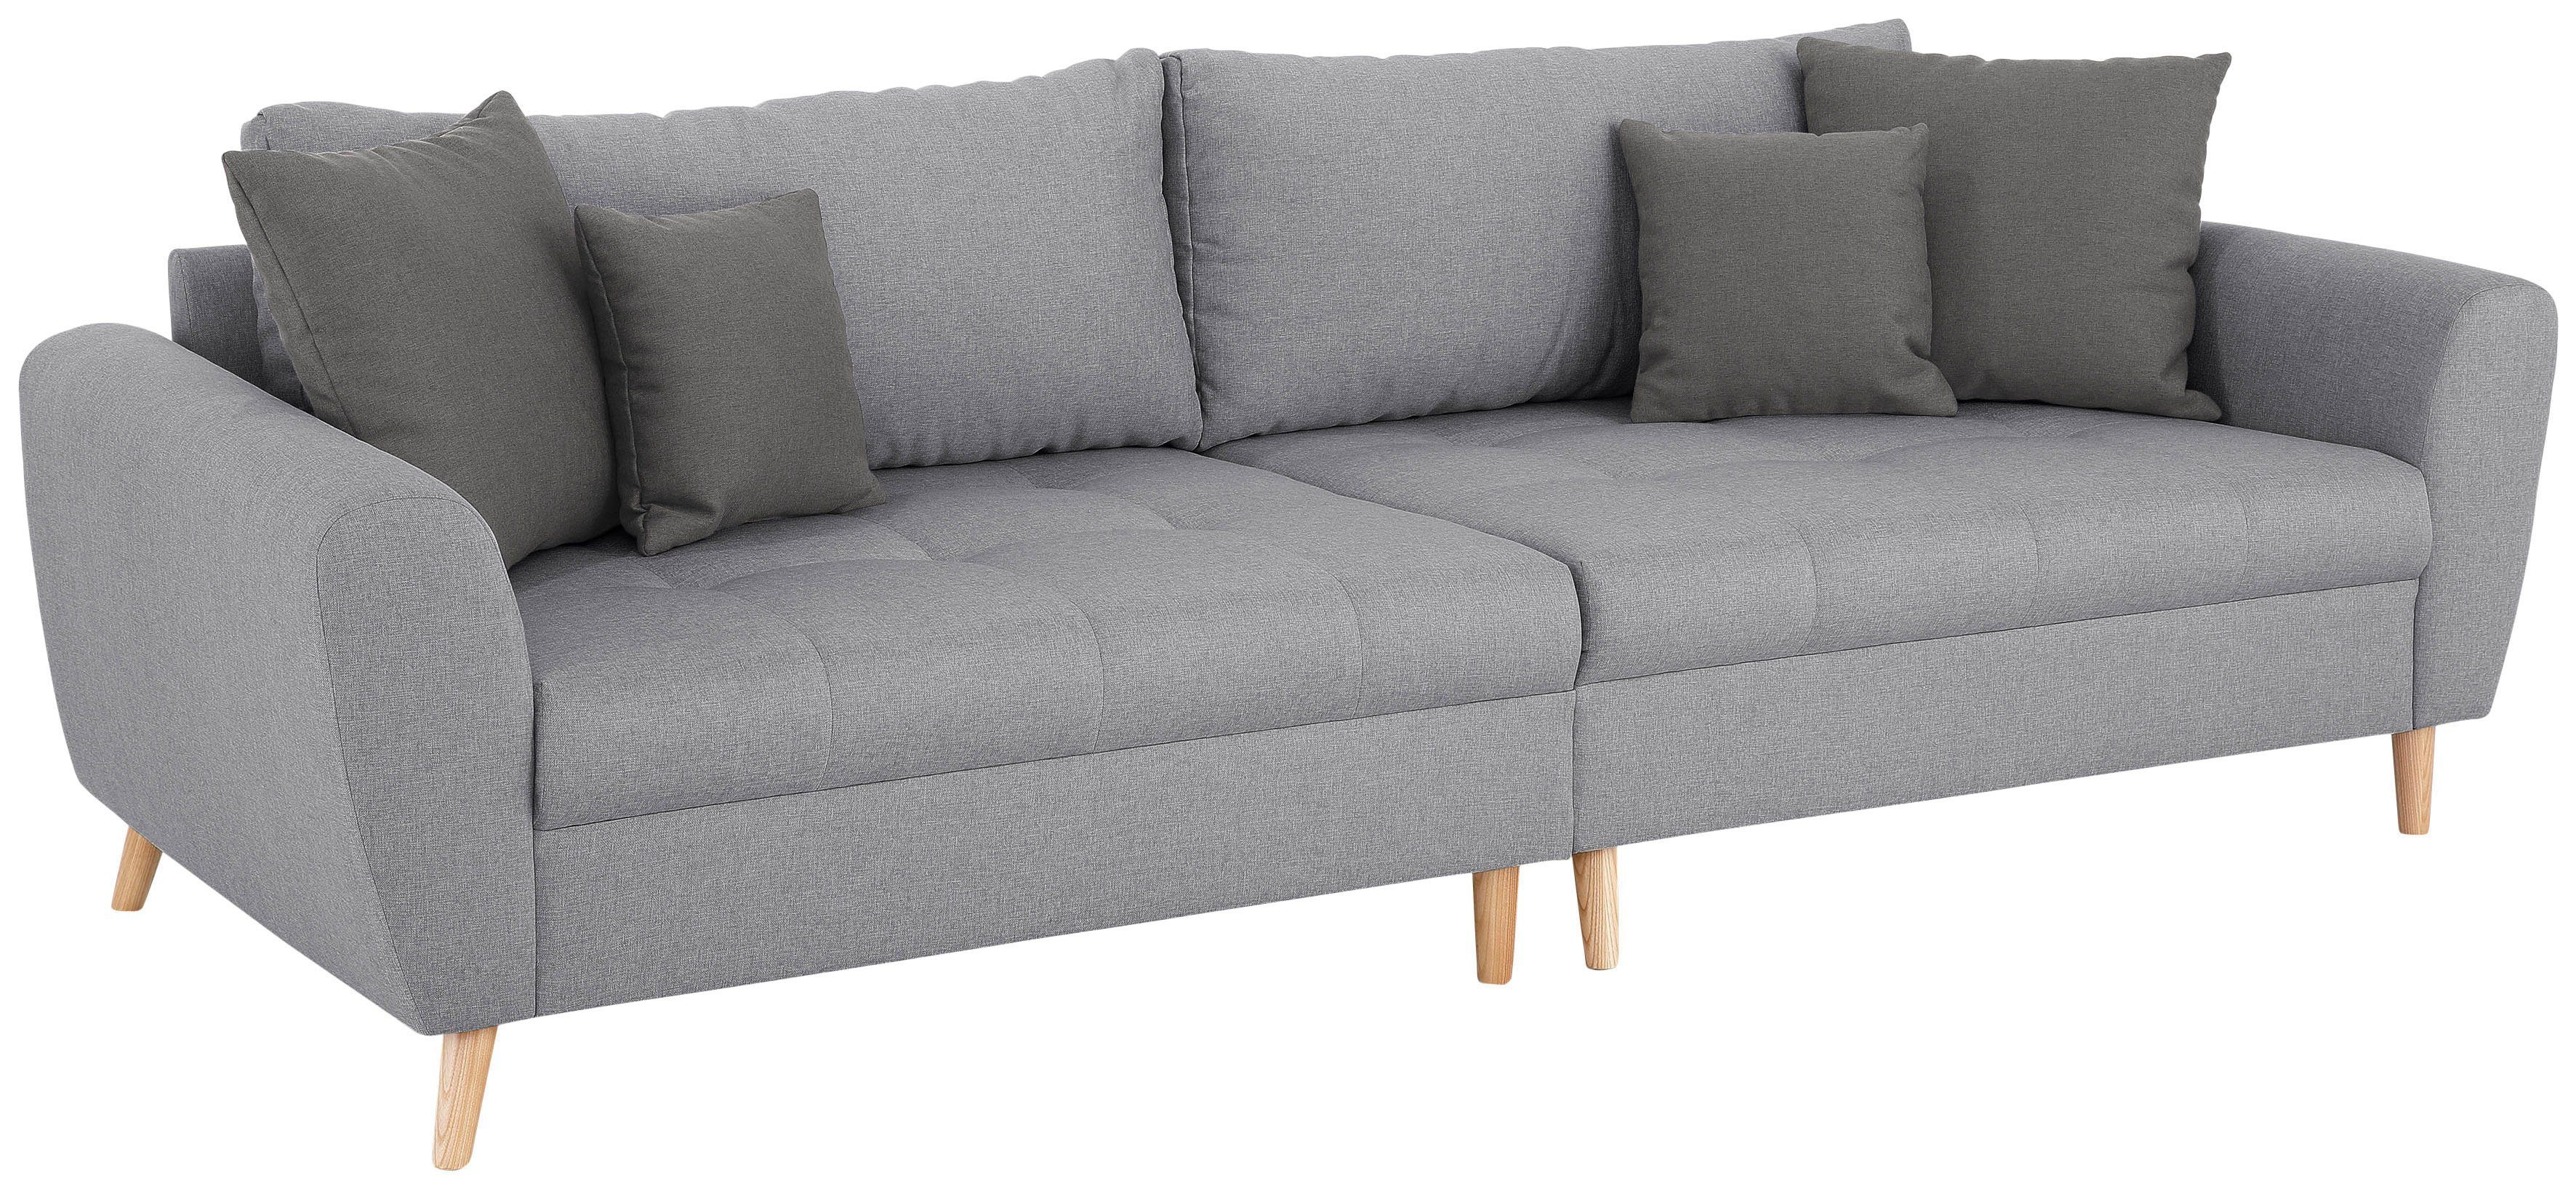 Home affaire Big-Sofa »Penelope Luxus«, mit besonders hochwertiger Polsterung für bis zu 140 kg pro Sitzfläche-Otto